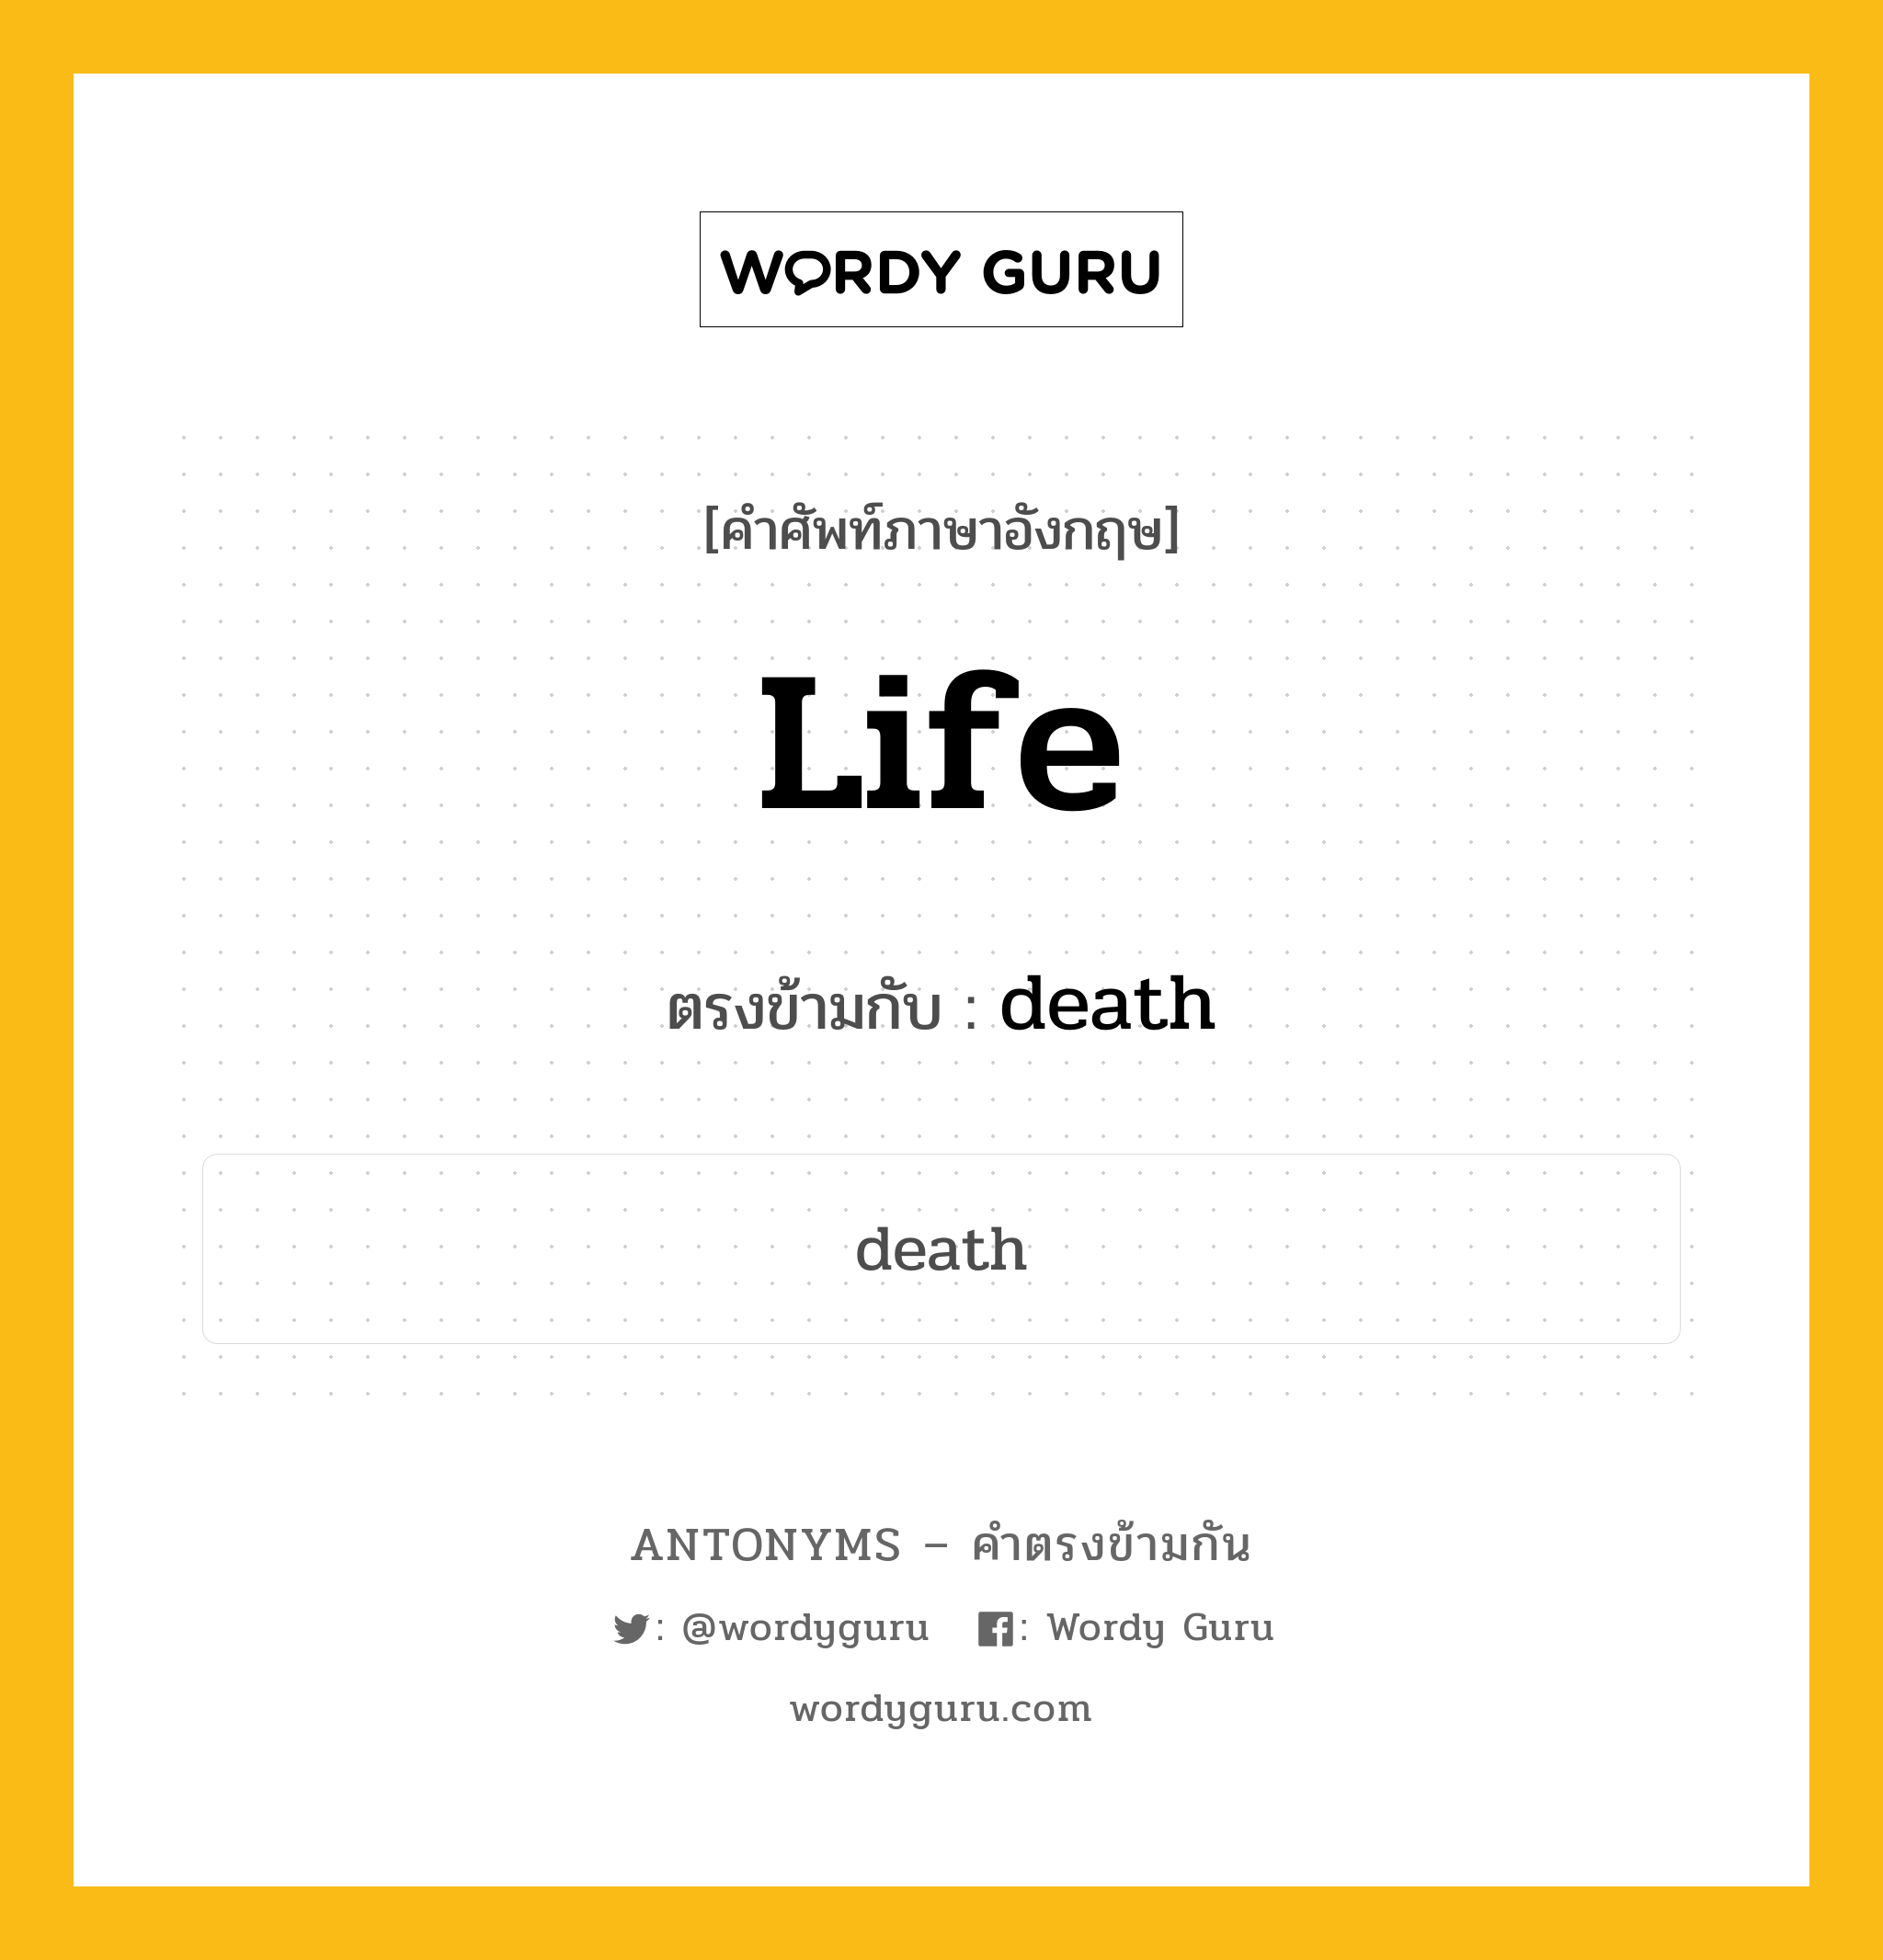 life เป็นคำตรงข้ามกับคำไหนบ้าง?, คำศัพท์ภาษาอังกฤษ life ตรงข้ามกับ death หมวด death